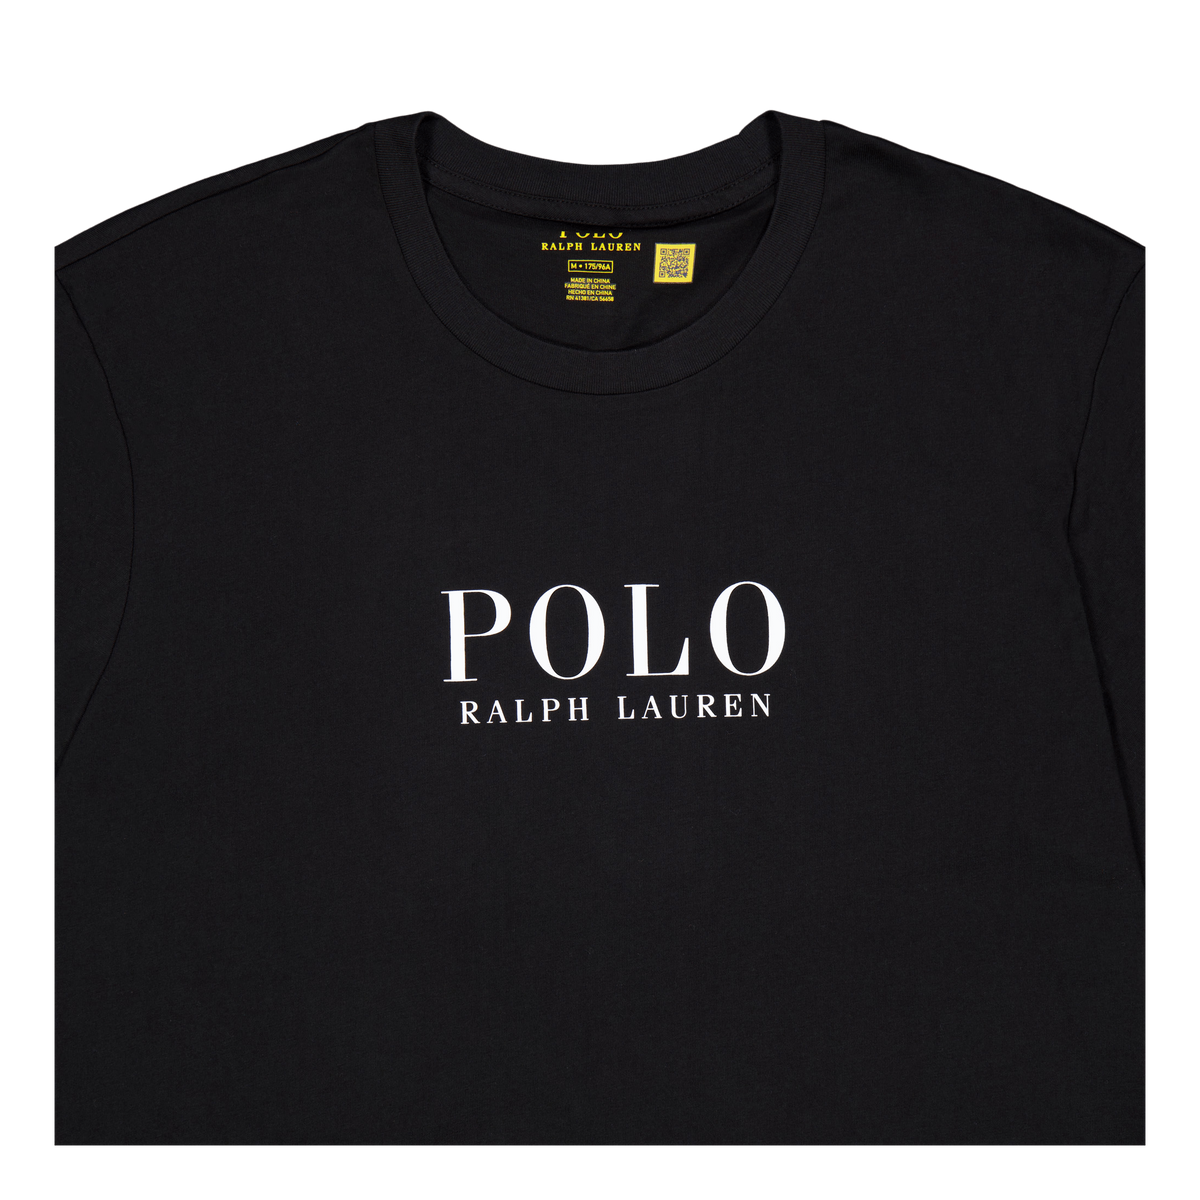 Polo Ralph Lauren S/s Liquid Cotton Sleep Top